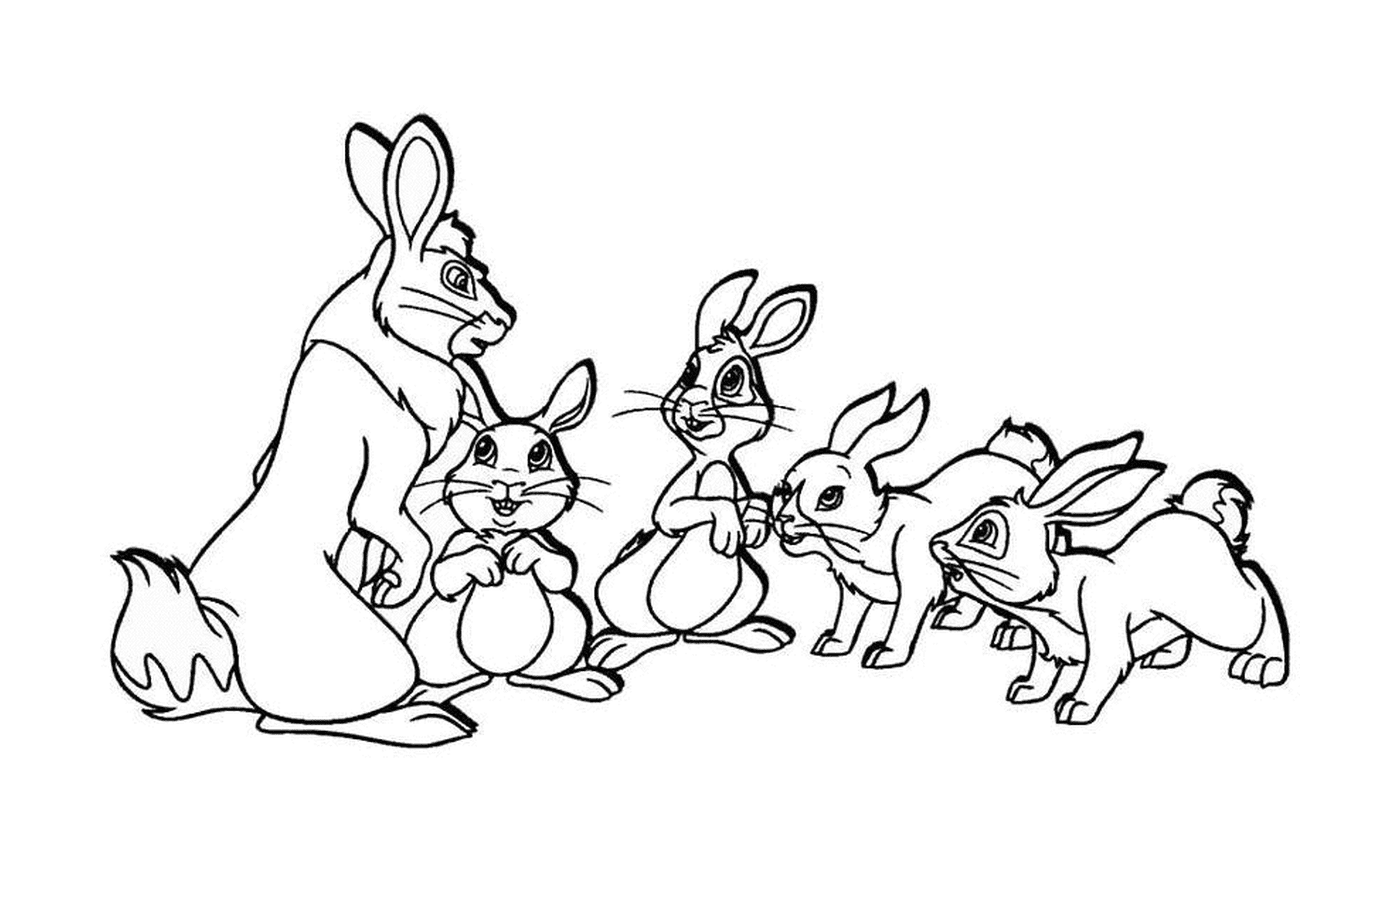  Grupo de conejos pequeños 